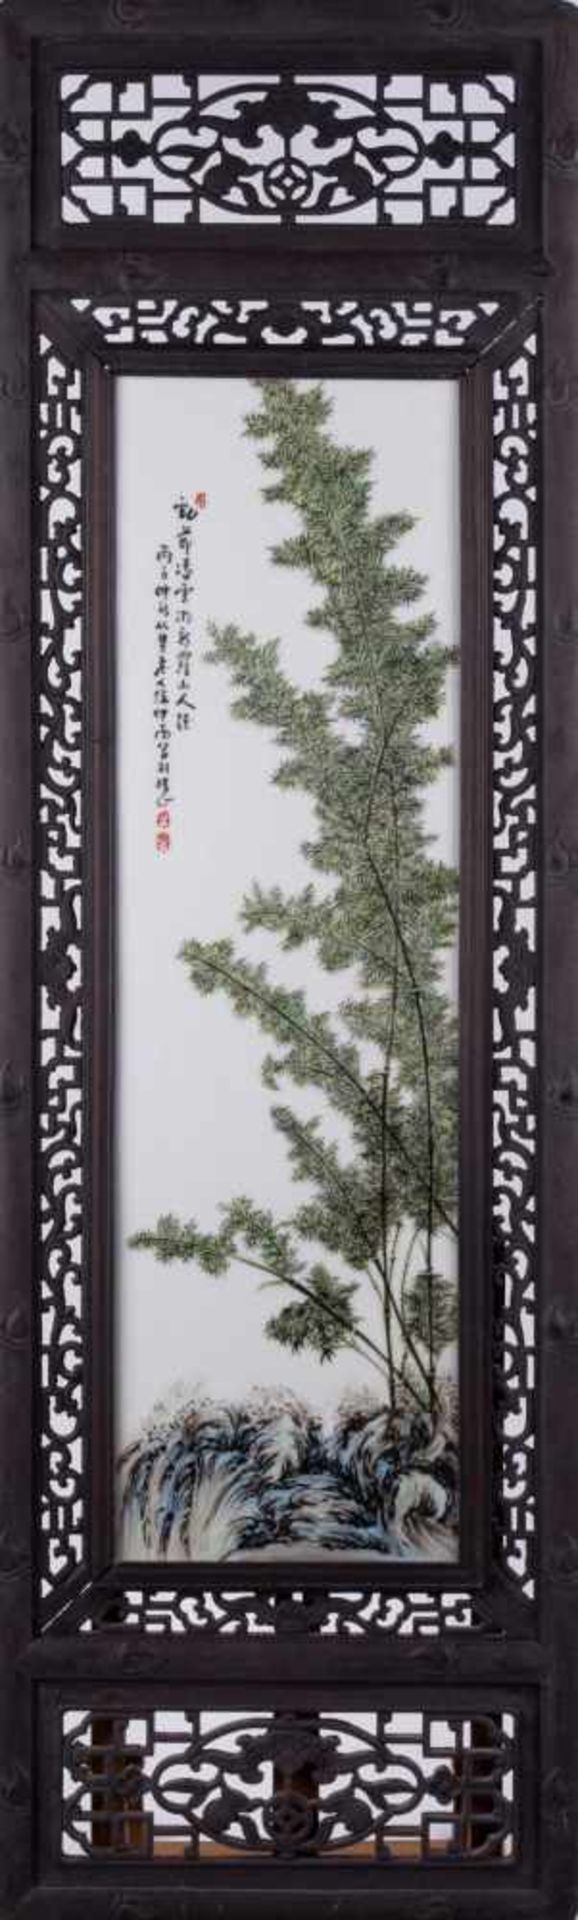 Porzellanbild China / Porcelain picture, China bemalt mit floralem Dekor, mit Schriftzeichen und